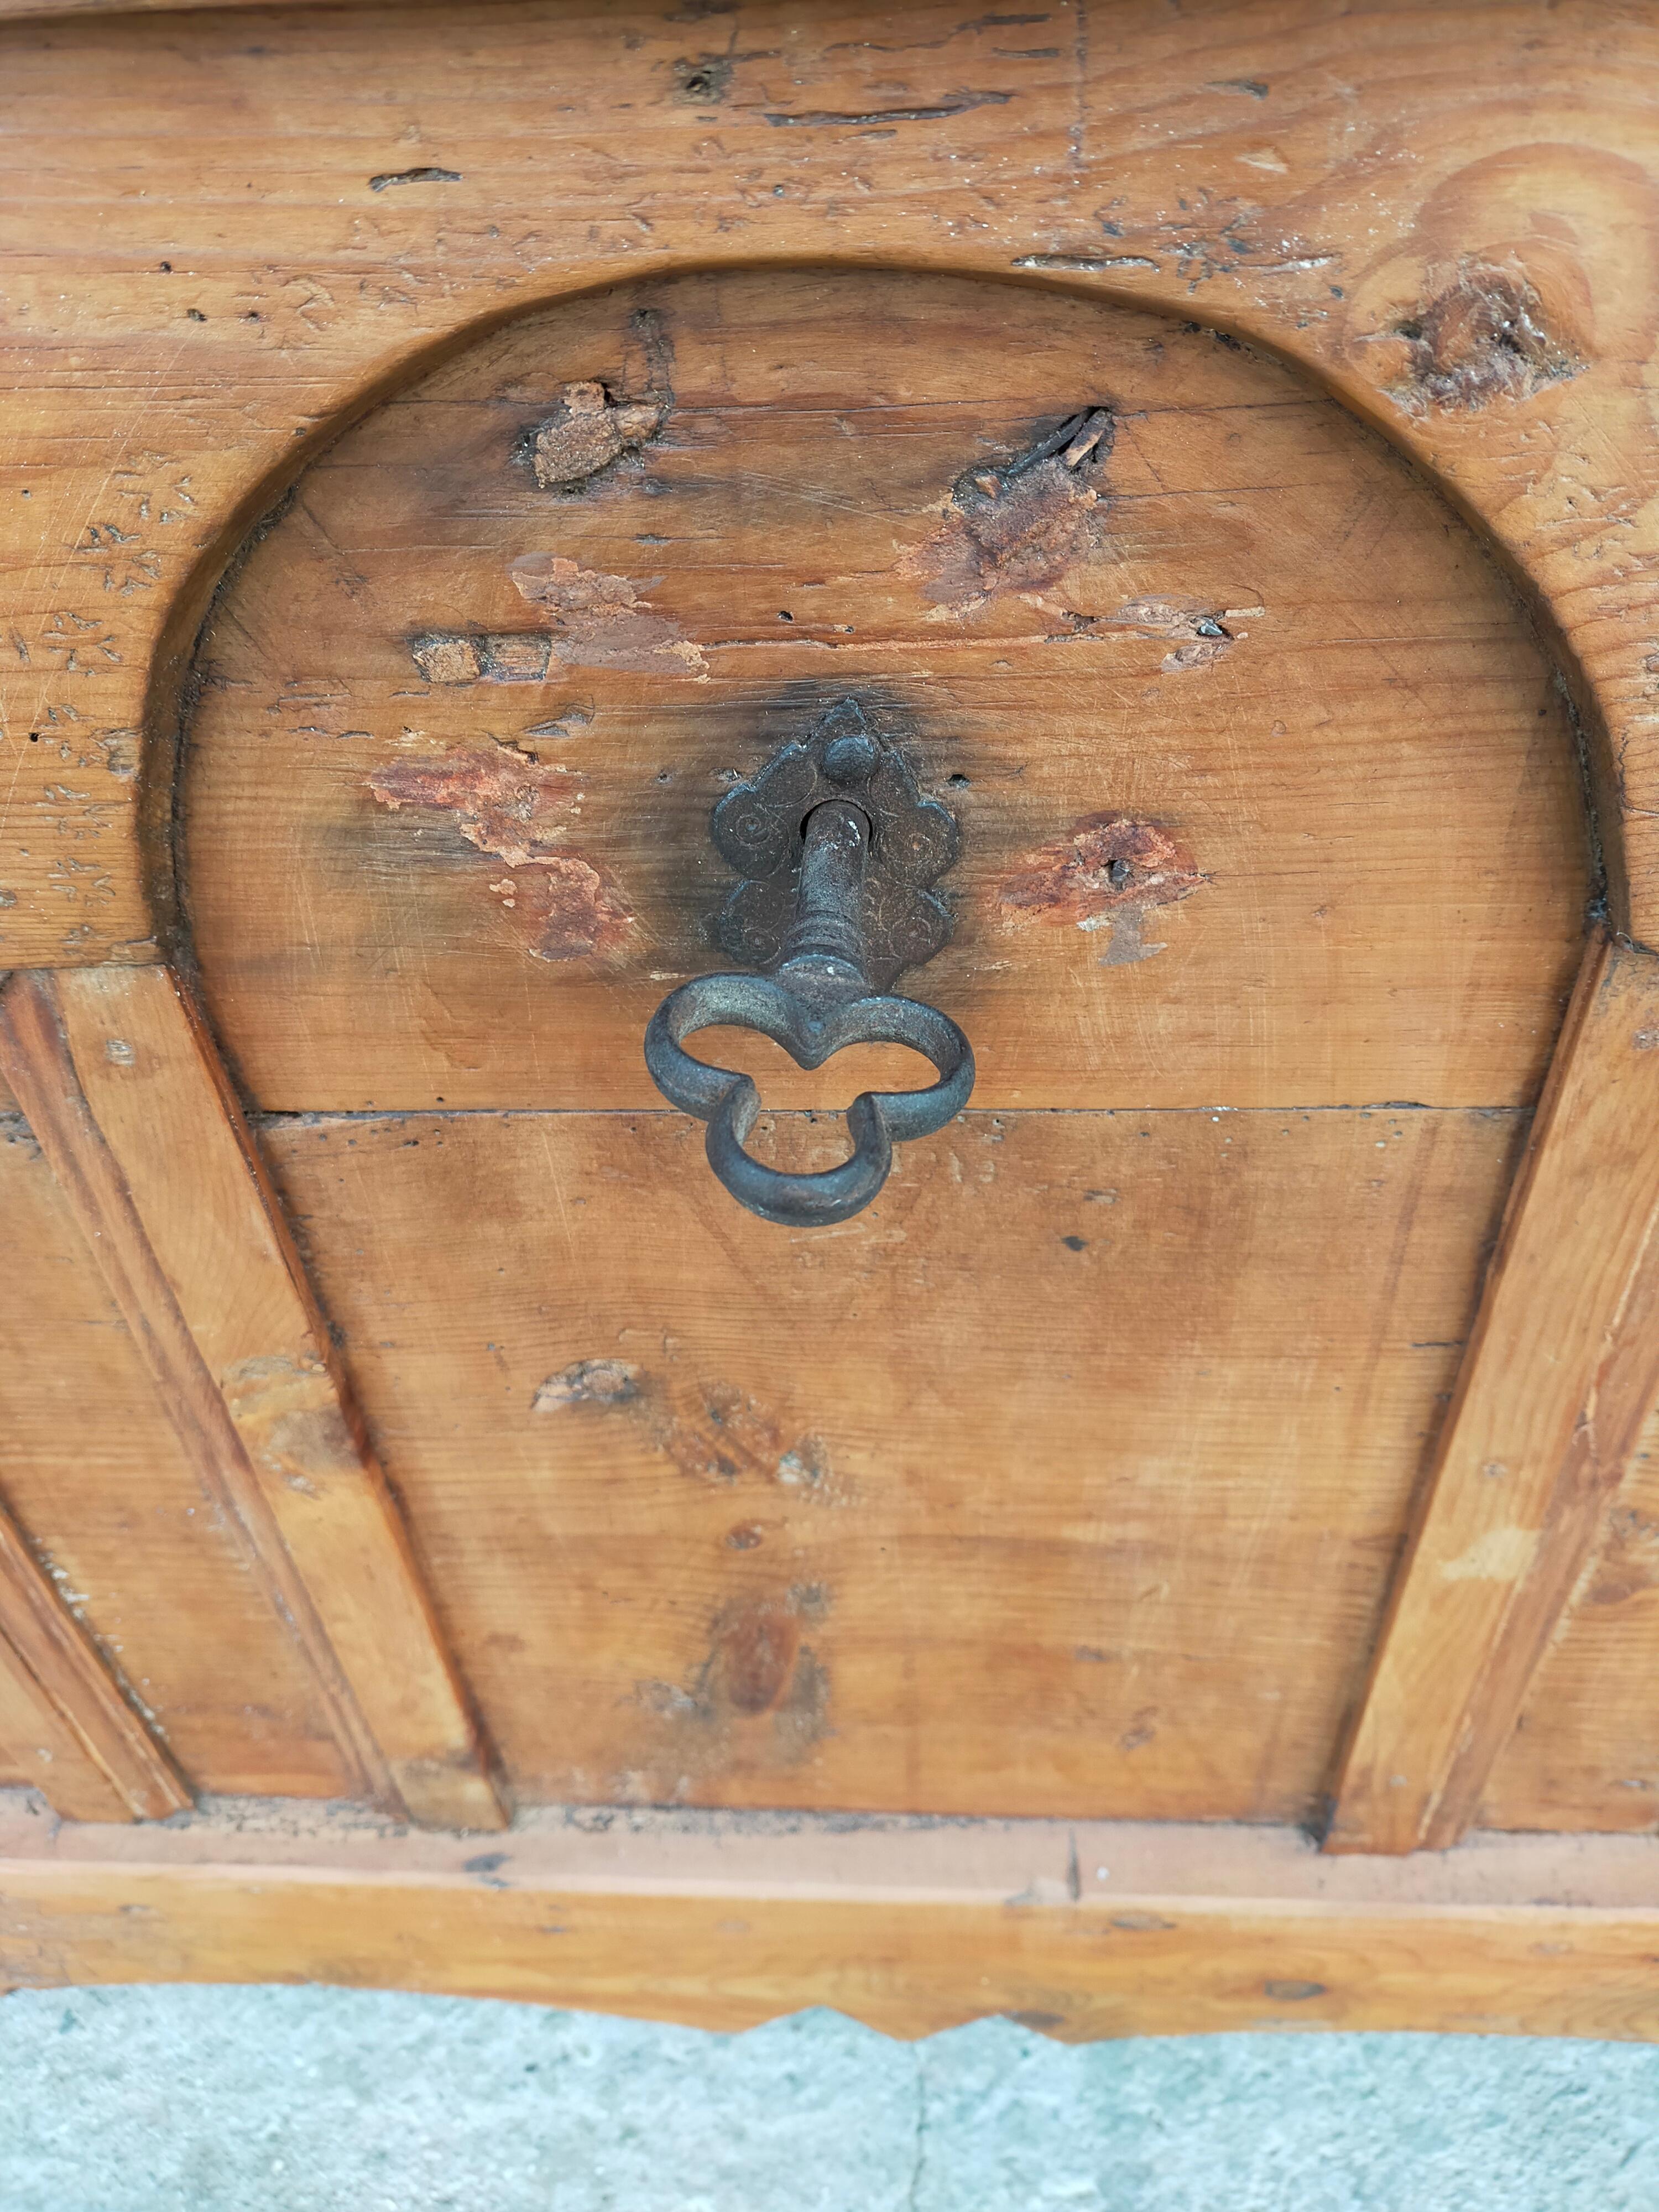 Coffre de mariage en pin, fabriqué à la fin des années 1700.
Trois visages sont sculptés sur la face avant.
A l'intérieur, il y a un tiroir de rangement.
Matériel entièrement original de l'époque.

Plus de photos ou d'informations sur demande du